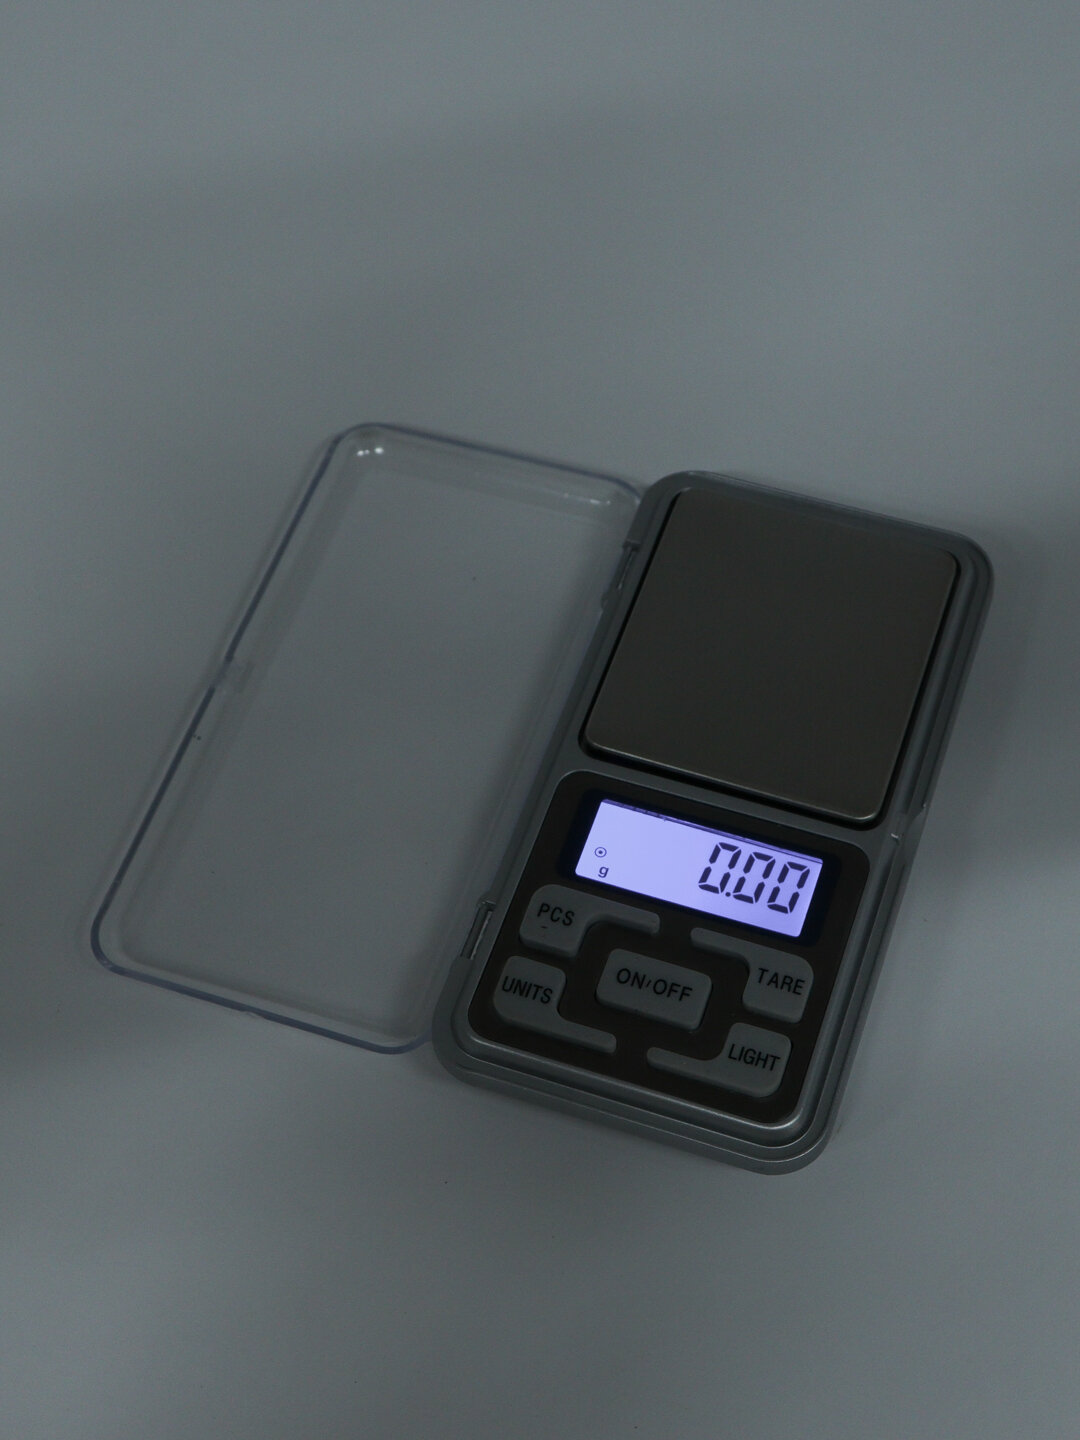 Карманные электронные весы / Электронные ювелирные весы Вид 0,1-500 гр - фотография № 8